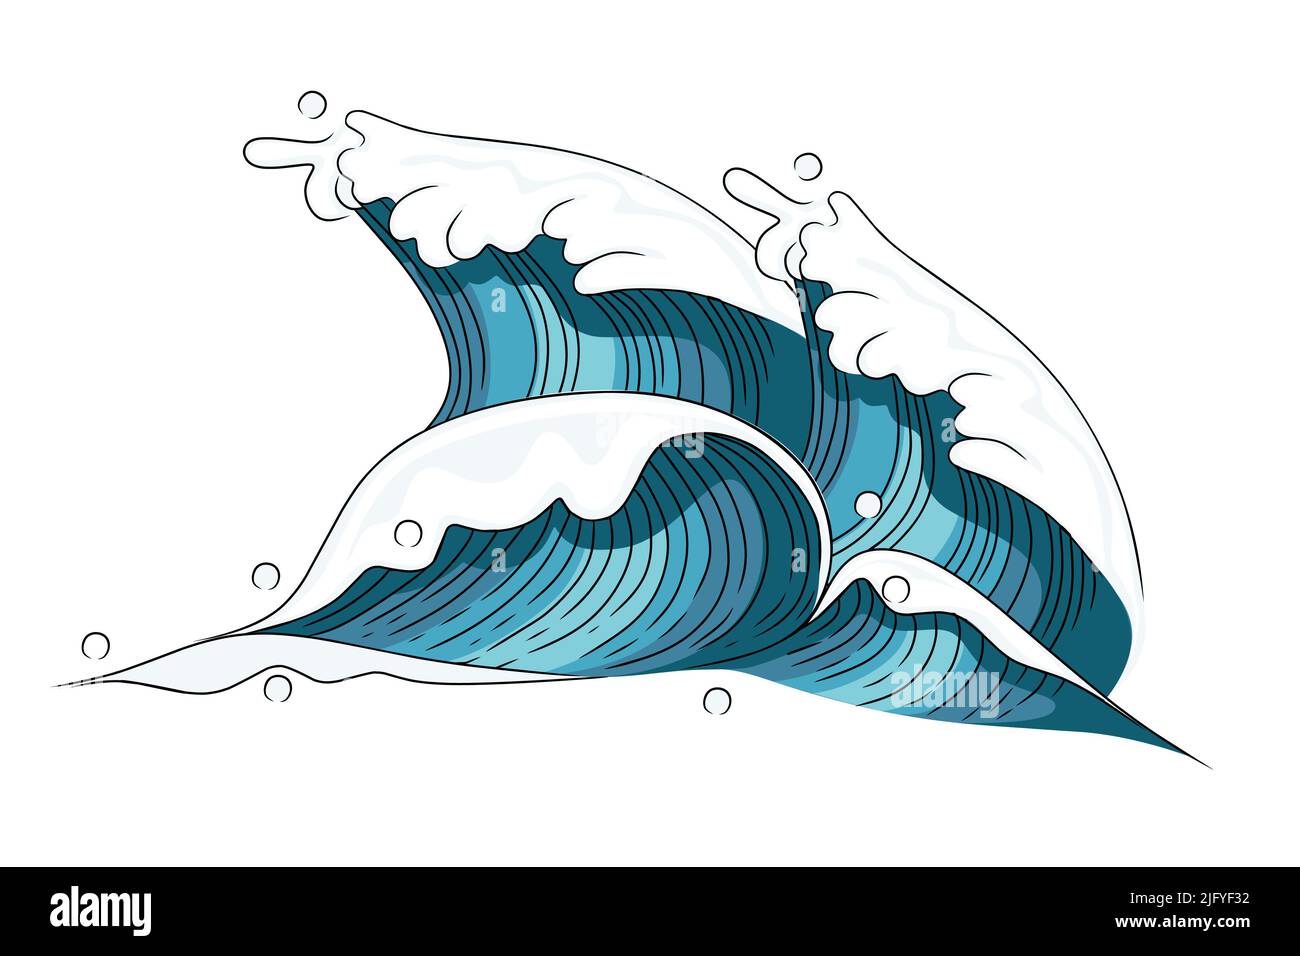 Handgezeichnet Stil Tsunami Welle große blaue Meereswelle in skizzenhaften Stil Vektor-Illustration Skizze Design auf weißem Hintergrund Stock Vektor